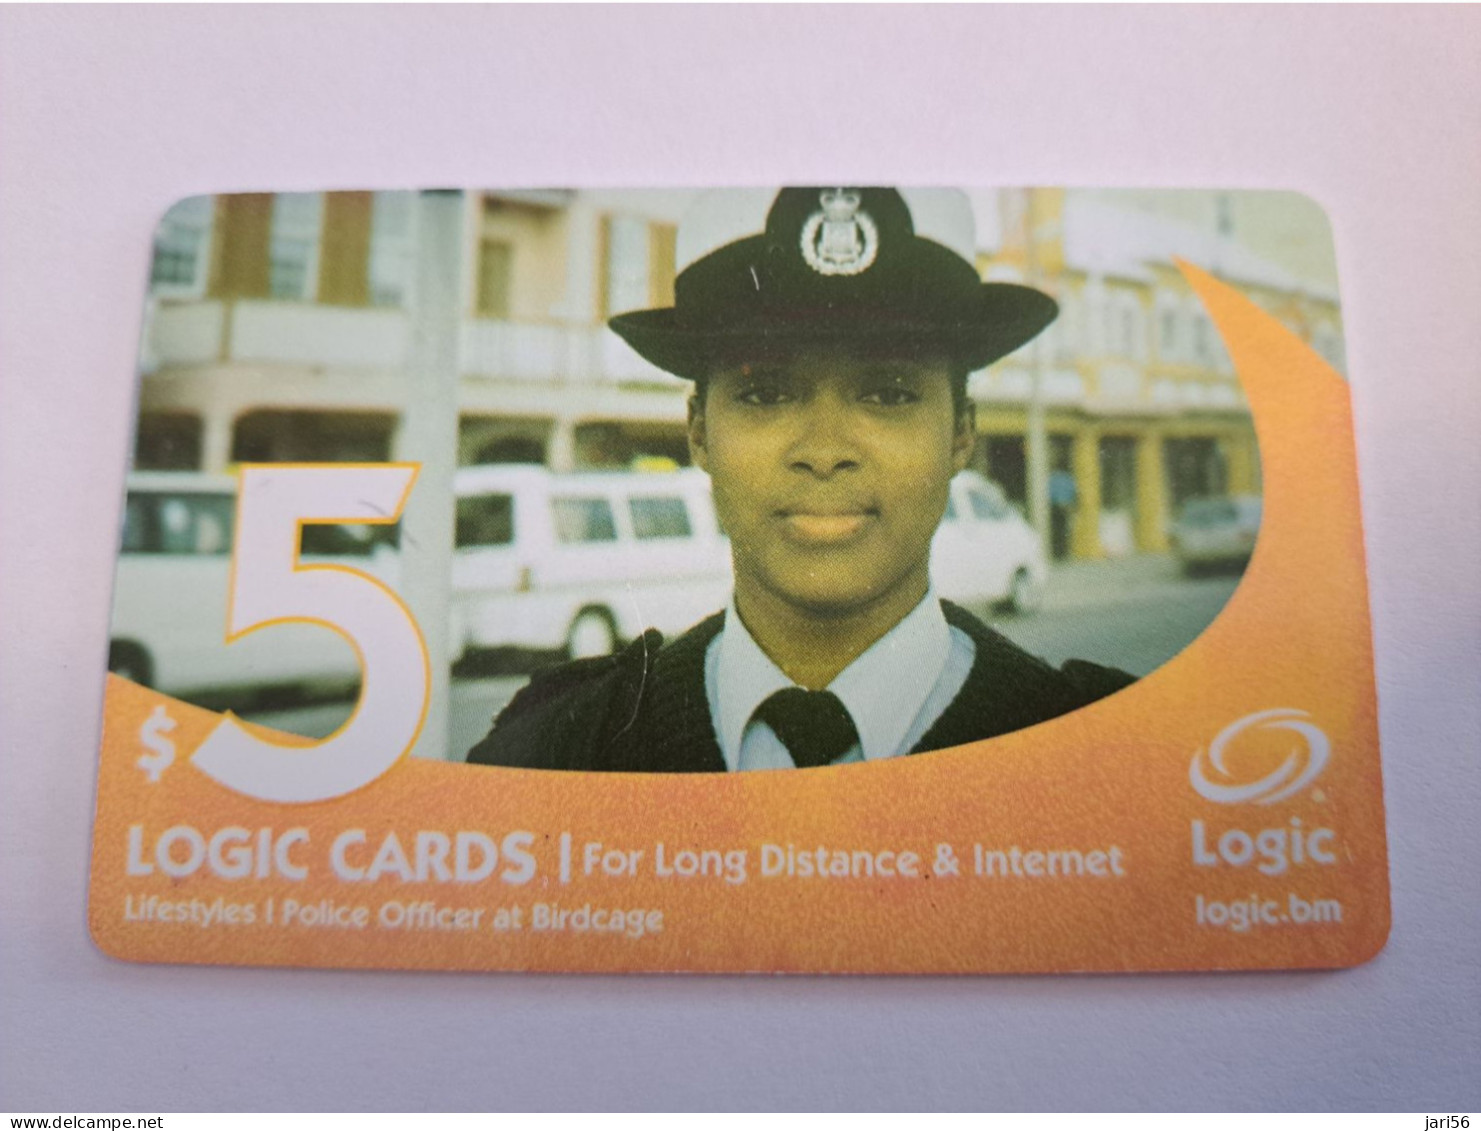 BERMUDA  $ 5,-  LOGIC/  POLICE LADY   IN BERMUDA / DATE 4 /2005 / 9700 EX   PREPAID CARD  Fine USED  **16193** - Bermudes